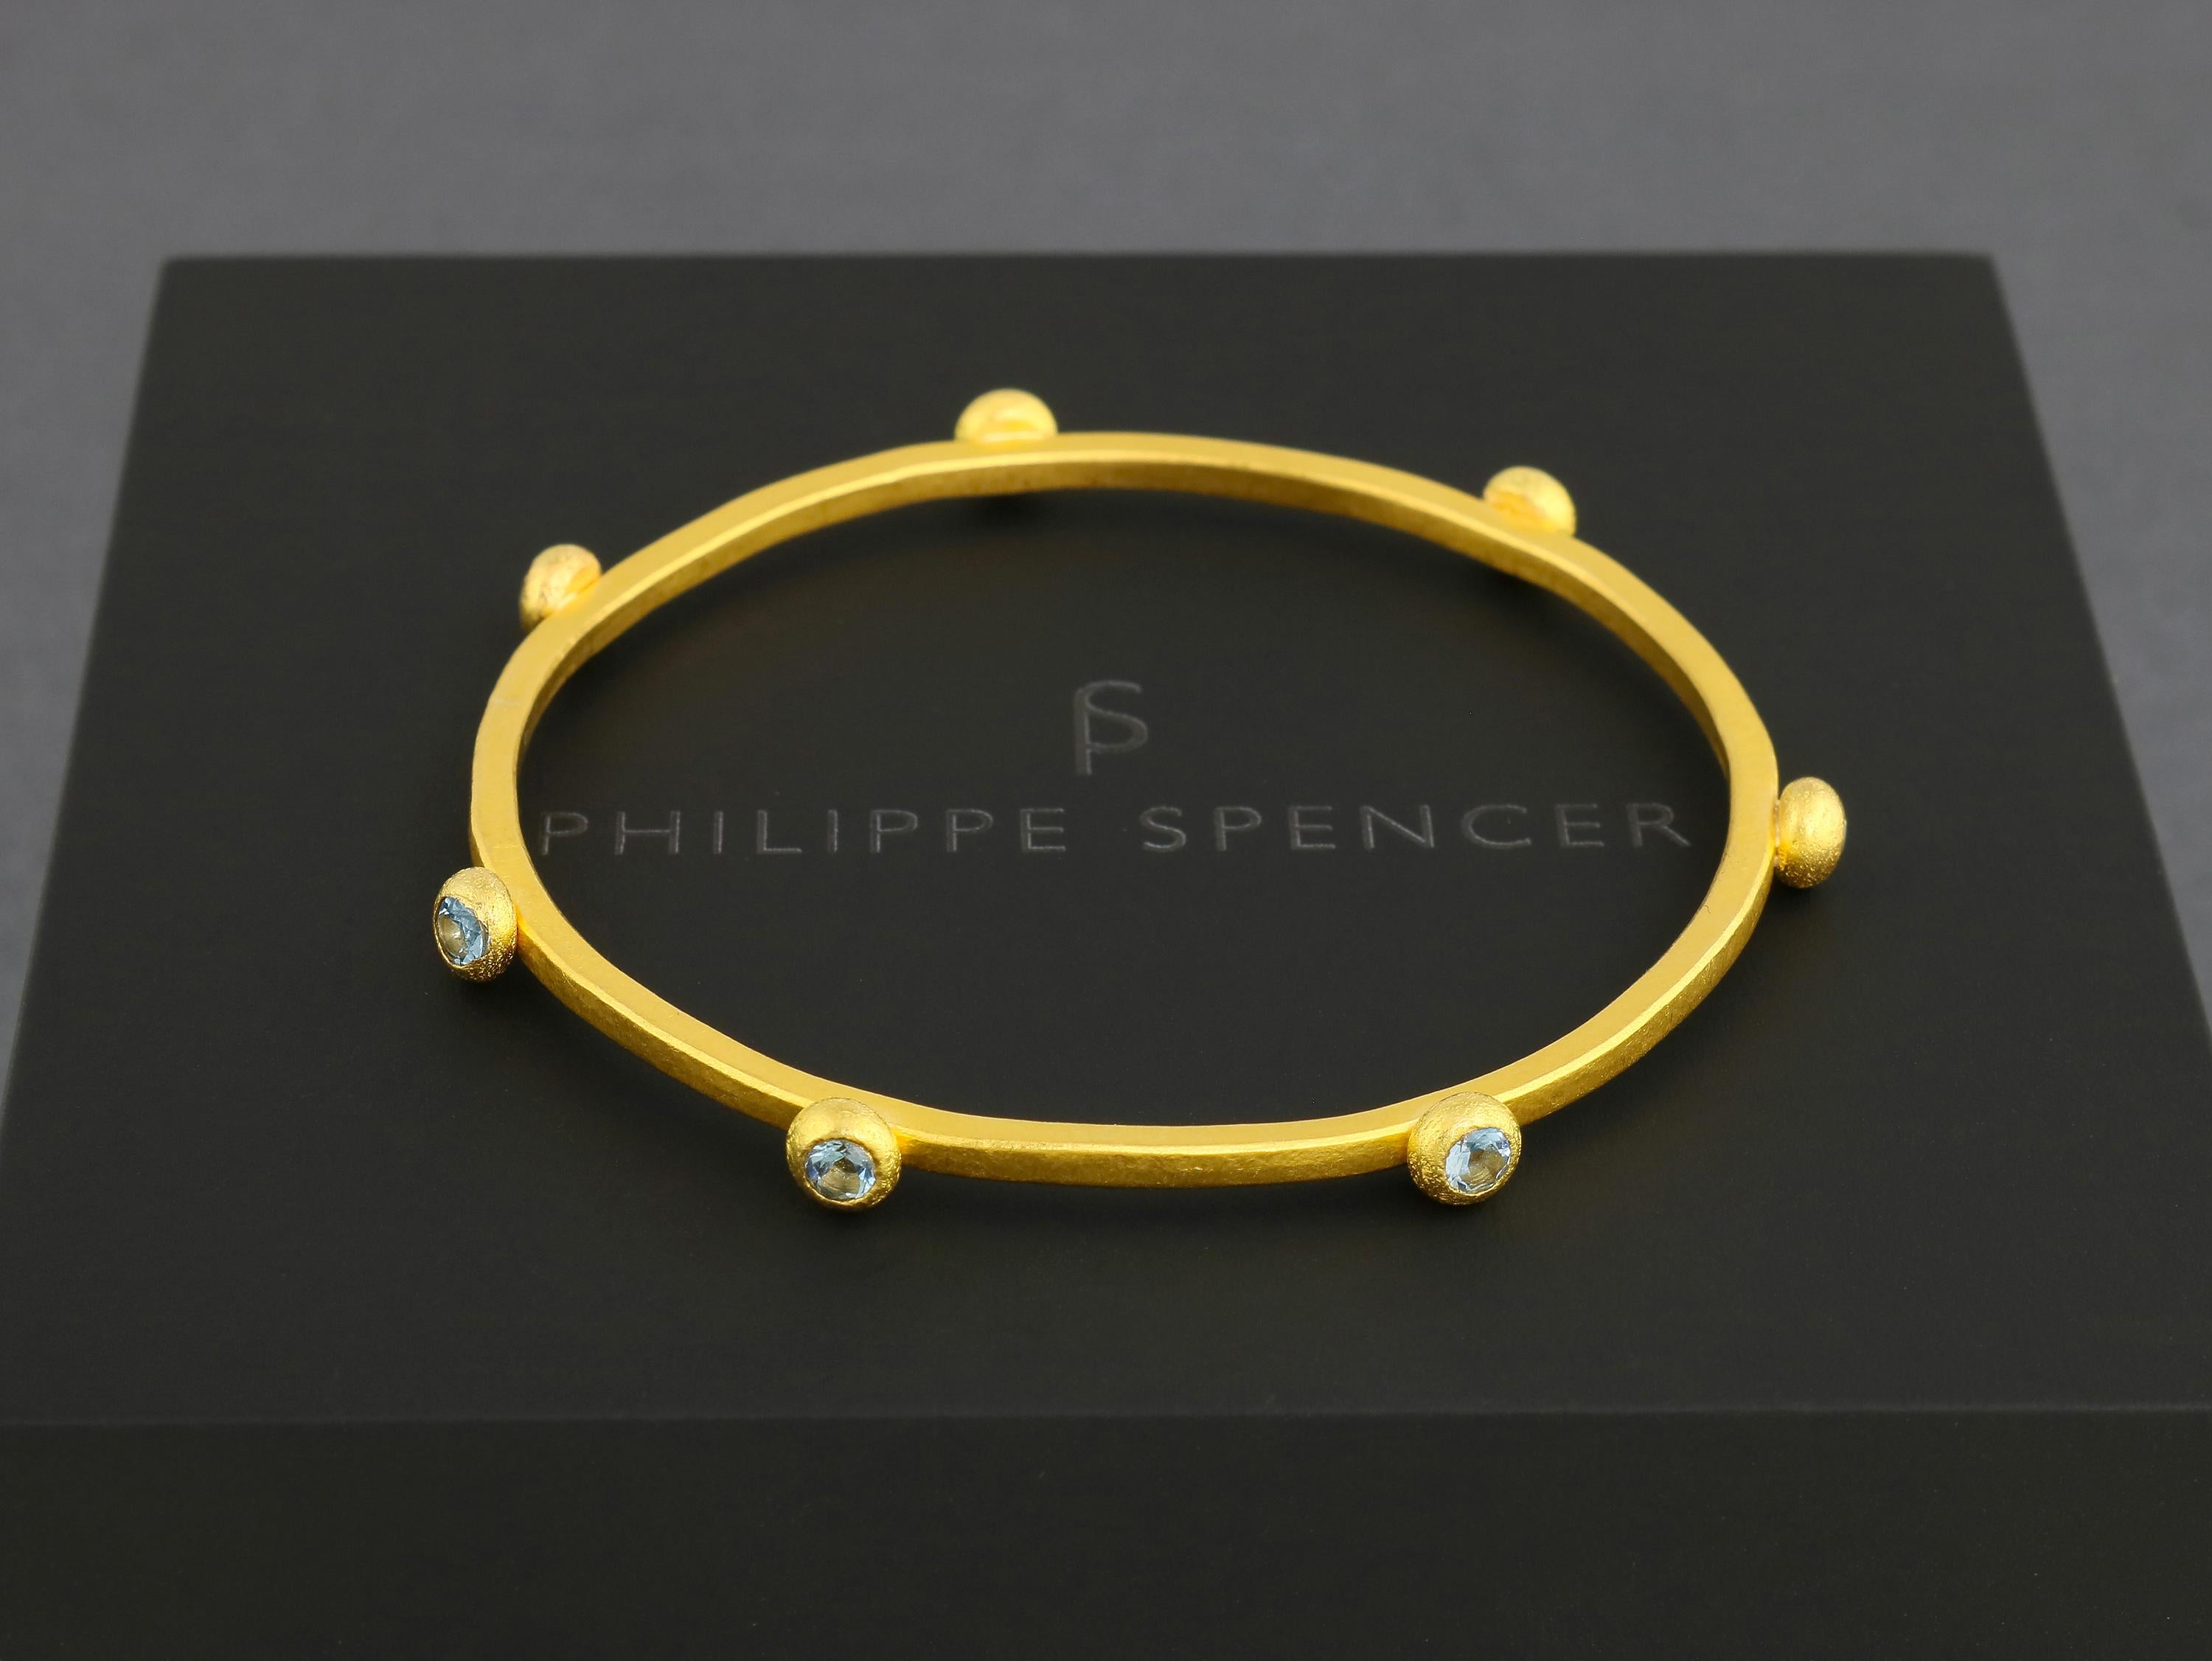 PHILIPPE SPENCER - Bracelet en or massif 24 carats 2,5 mm x 2,5 mm entièrement forgé à la main et à l'enclume avec aigues-marines en quantité de 7, 1,27 ct. Total, serti dans des gouttes d'or pur 22K. Une œuvre d'art unique en son genre.  Toutes nos